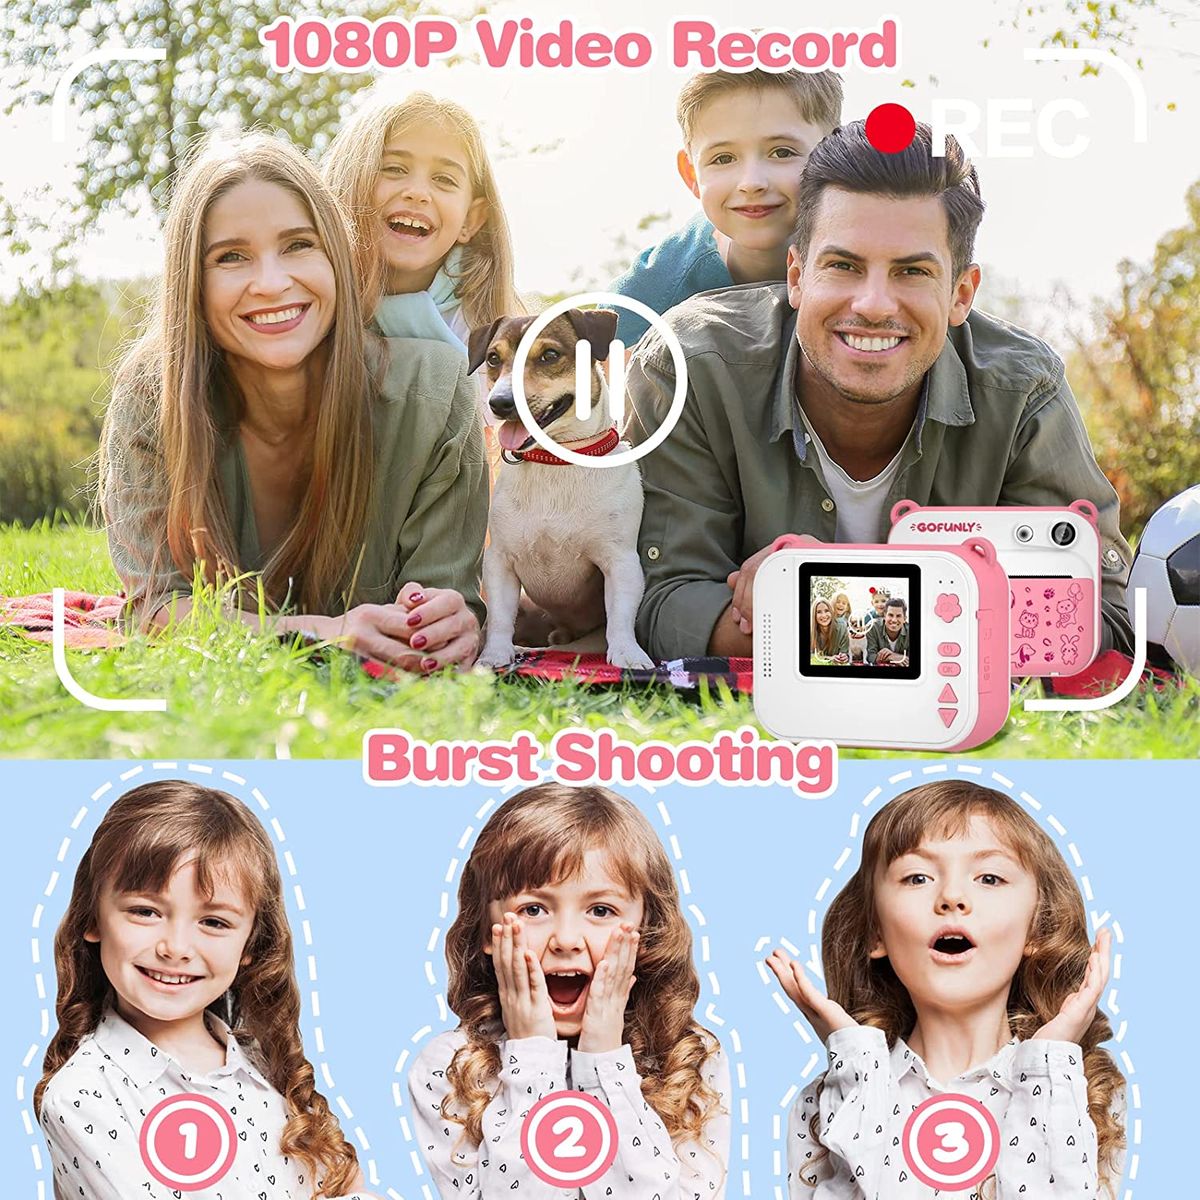 Gofunly Kinderkamera, DigitalKamera Sofortbildkamera Kinder 2,0 Zoll Bildschirm 1080P Videokamera Schwarzweiß Fotokamera,32GB SD Karte,3 Rollen Druckpapier,5 Farbstift Geschenk für 3-12 Jahre Kinder S-Pink